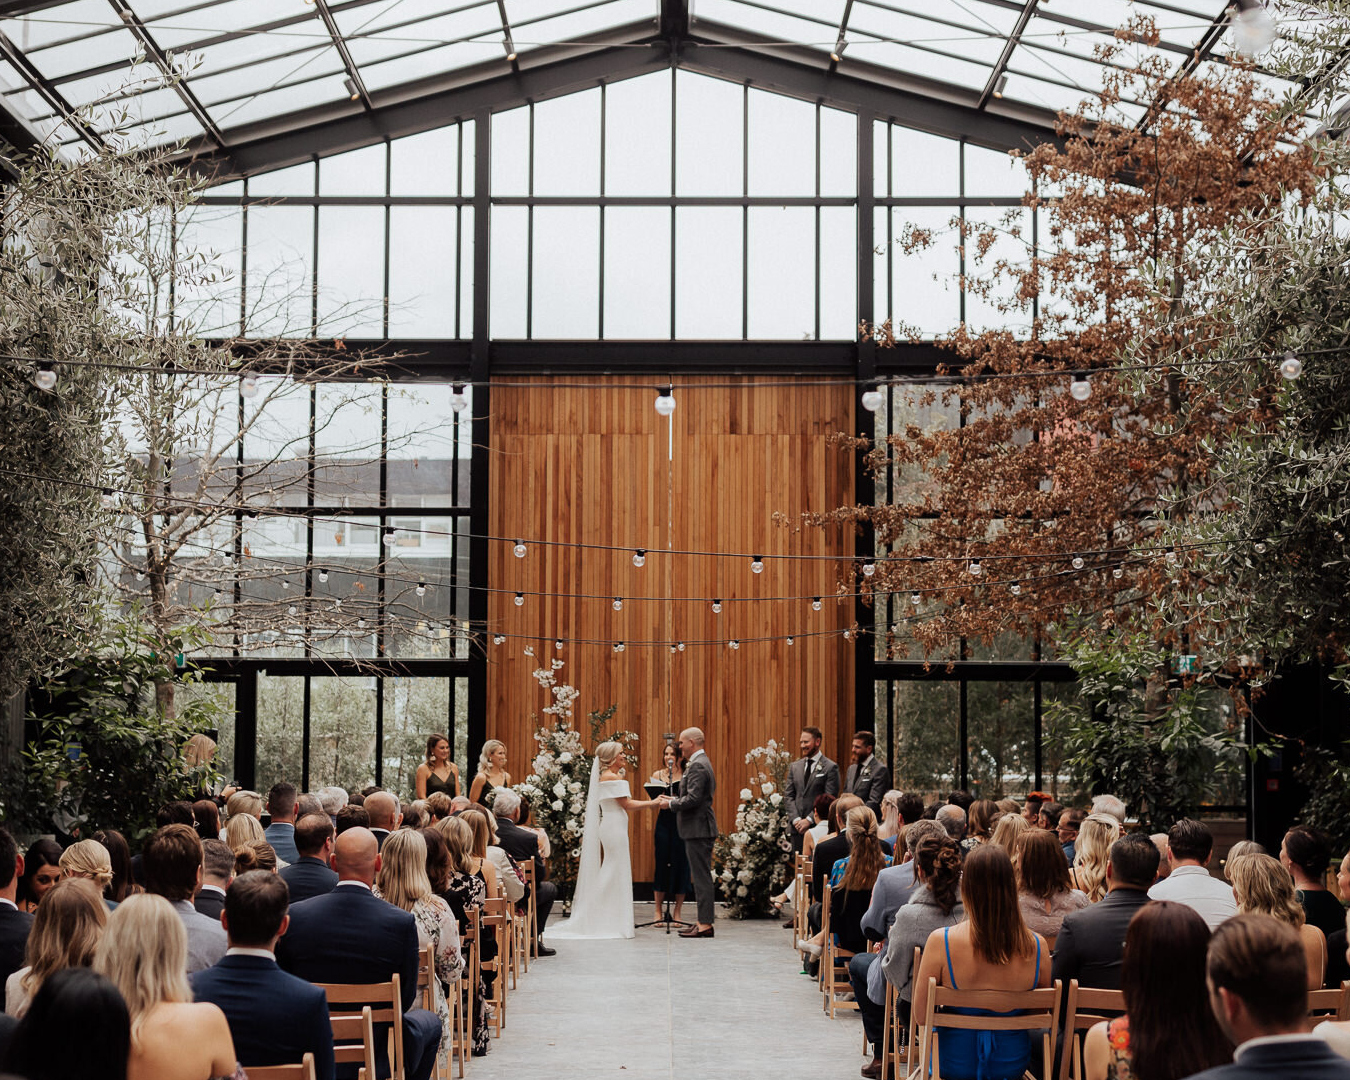 Wedding ceremony inside large glasshouse